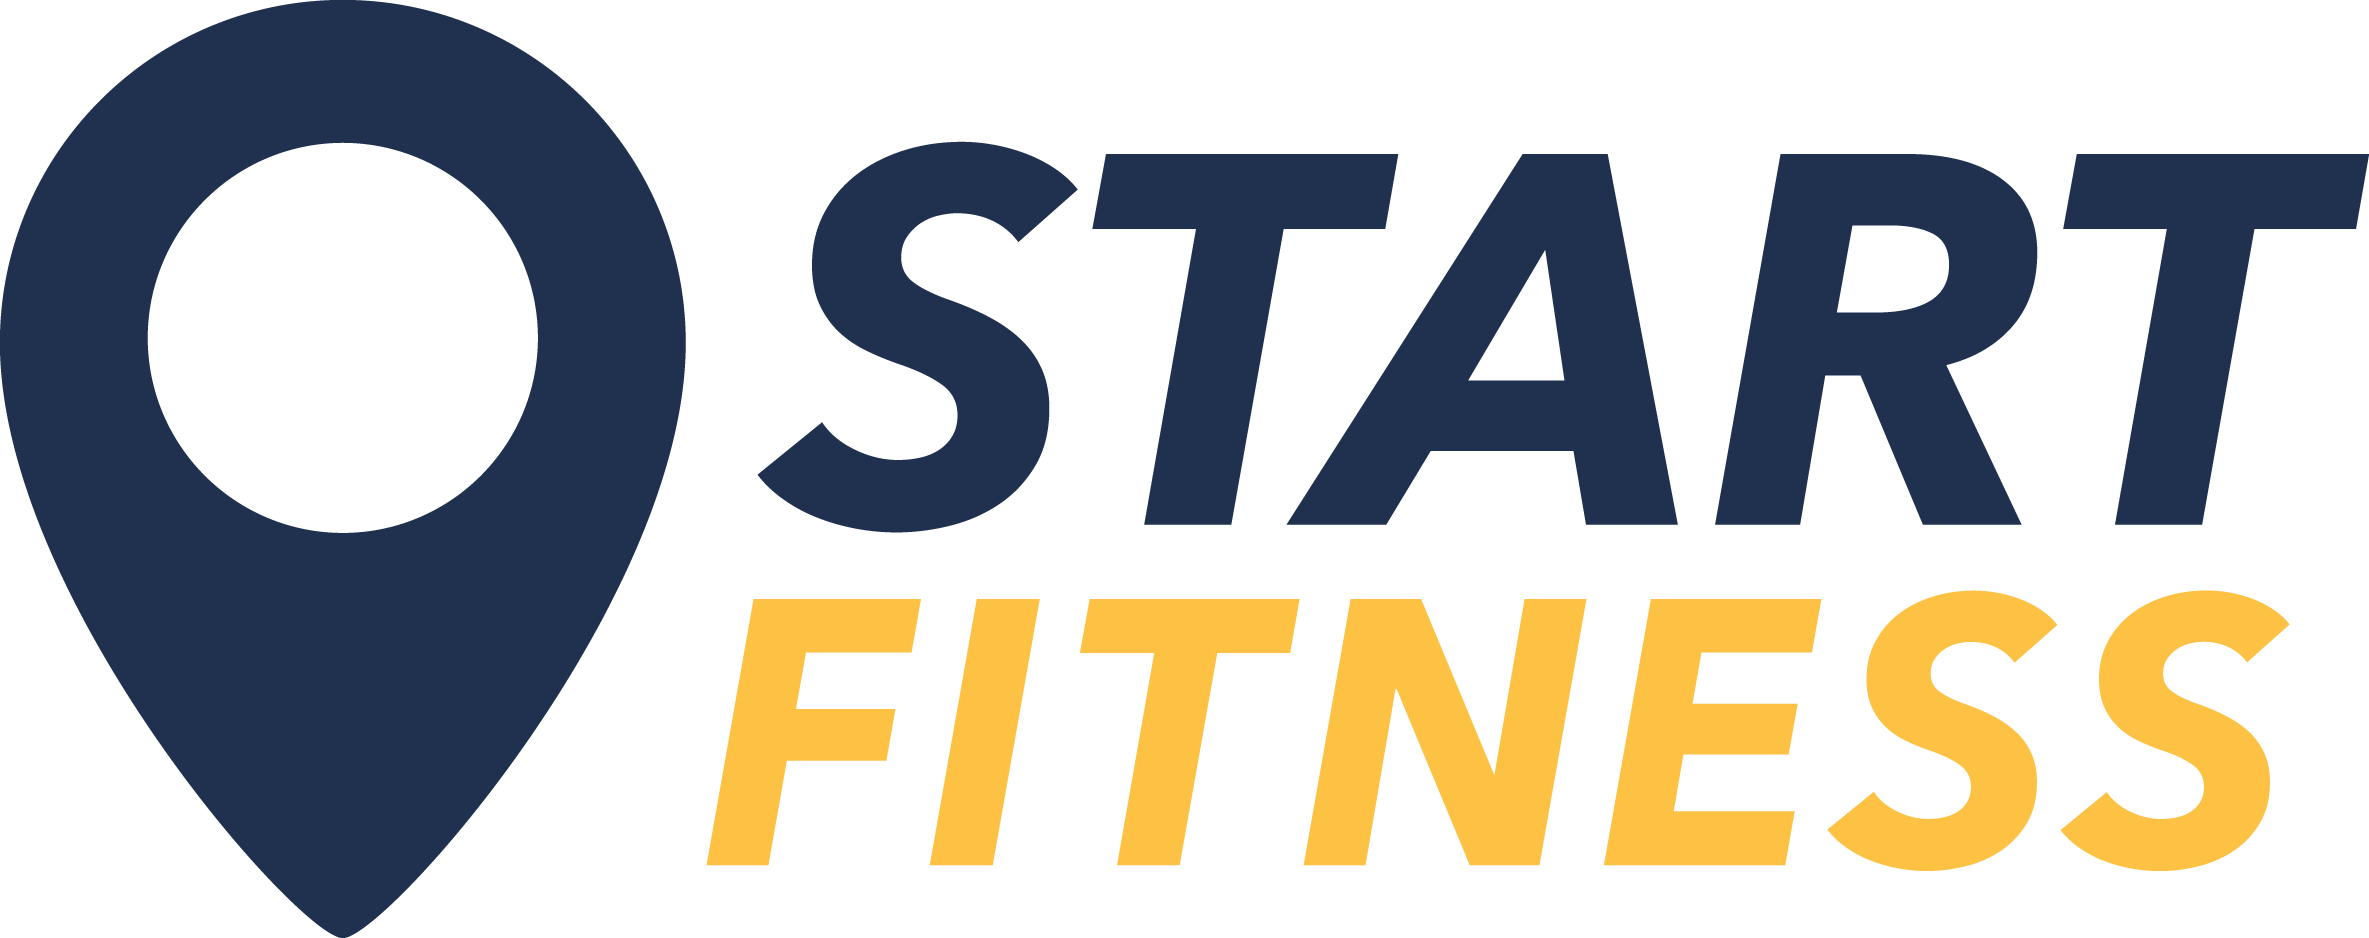 Start Fitness Logo